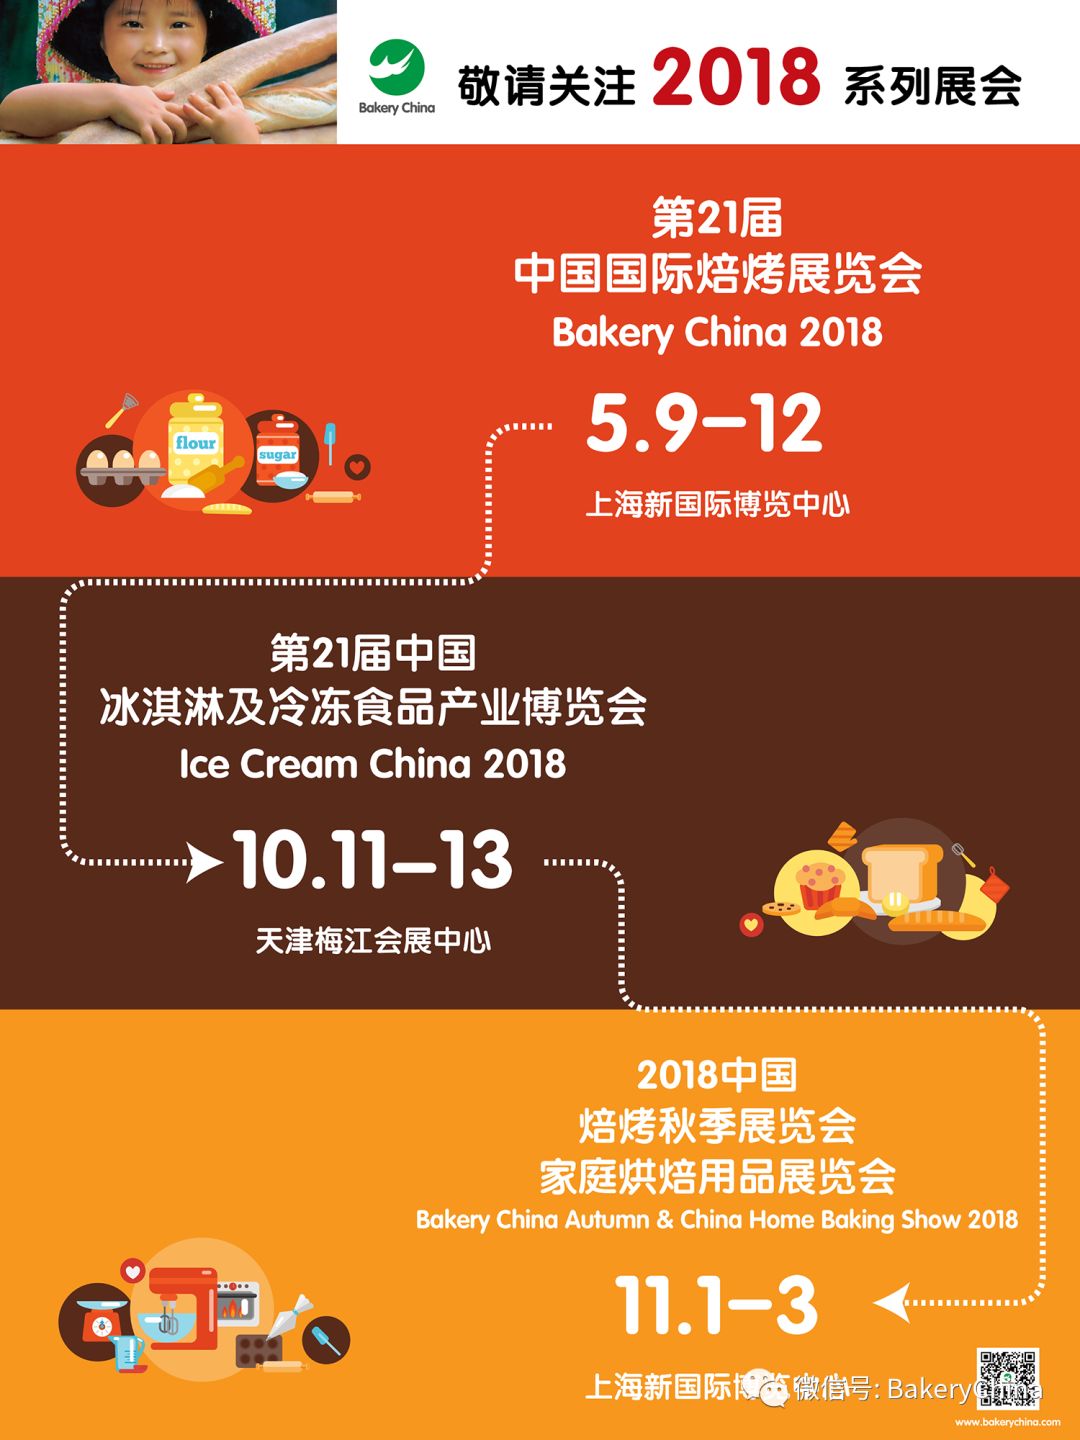 烘焙,焙烤,上海焙烤展,中国国际焙烤展览会BakeryChina,食品展会大全,N3包装馆